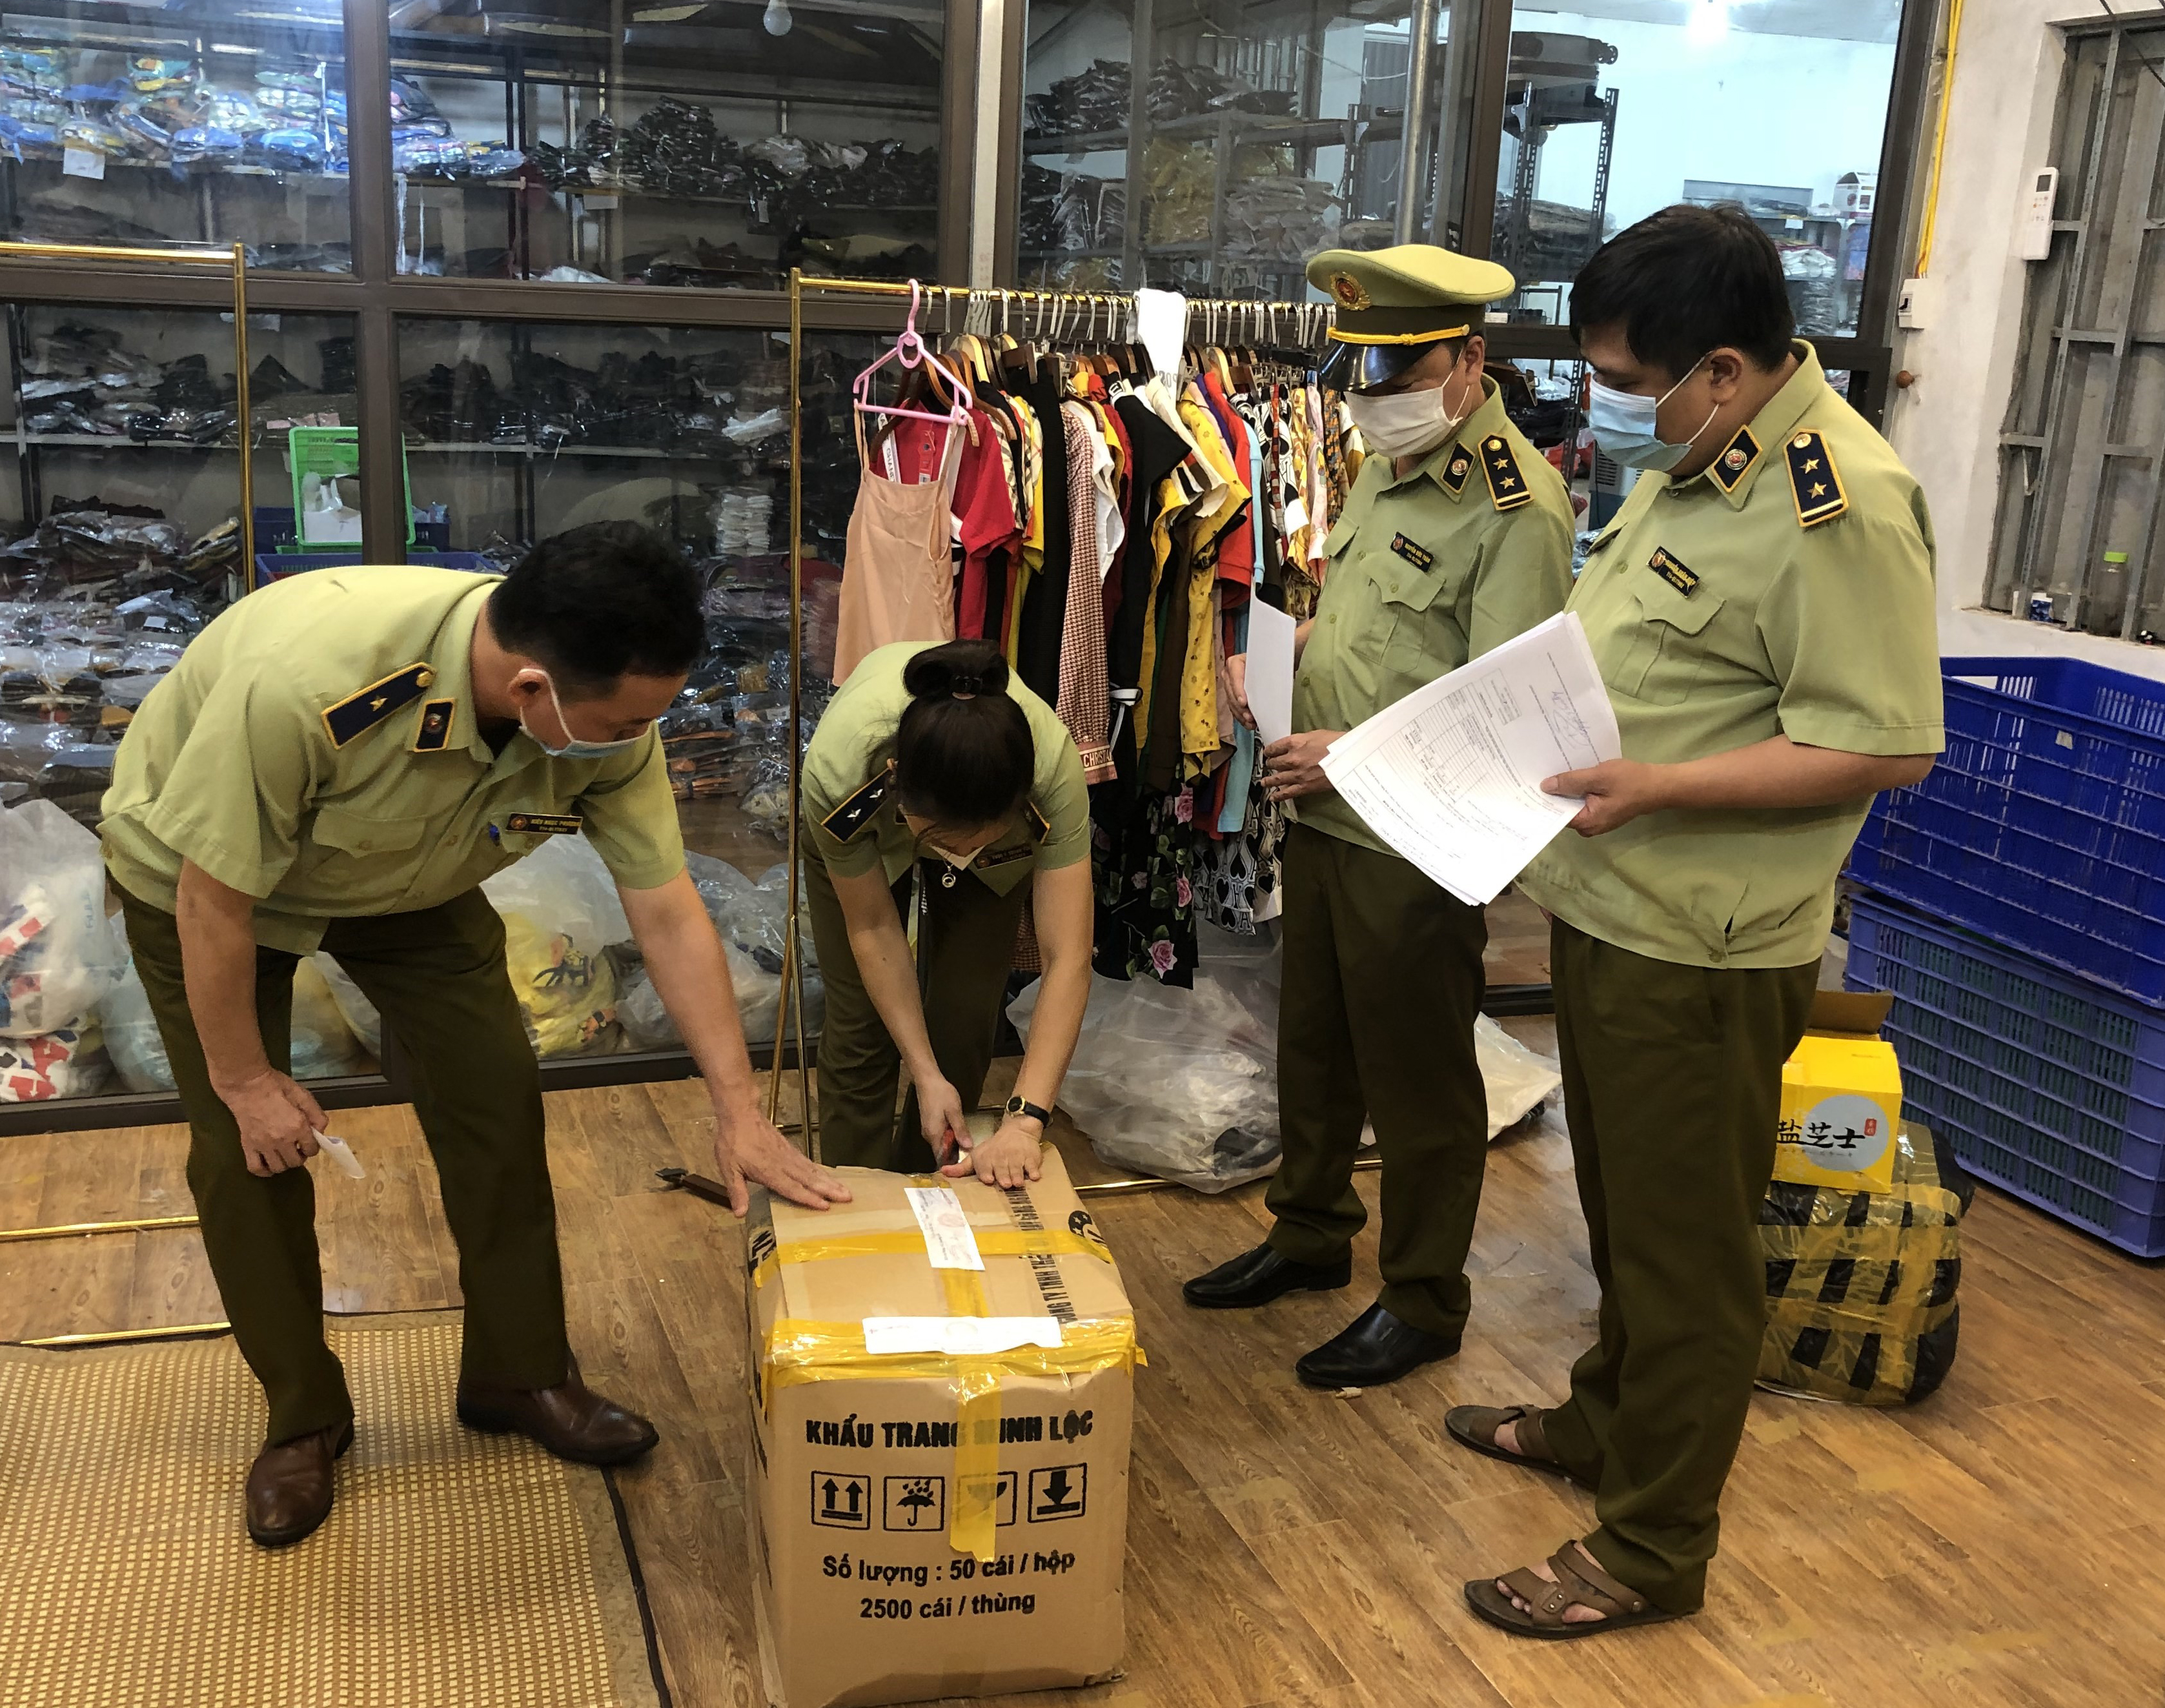 Hình ảnh: Nghiên Cứu Pháp Luật: Cục QLTT tỉnh Tuyên Quang vừa phát hiện 2 hộ kinh doanh hàng hoá giả mạo nhãn hiệu đang được bảo hộ tại Việt Nam số 2